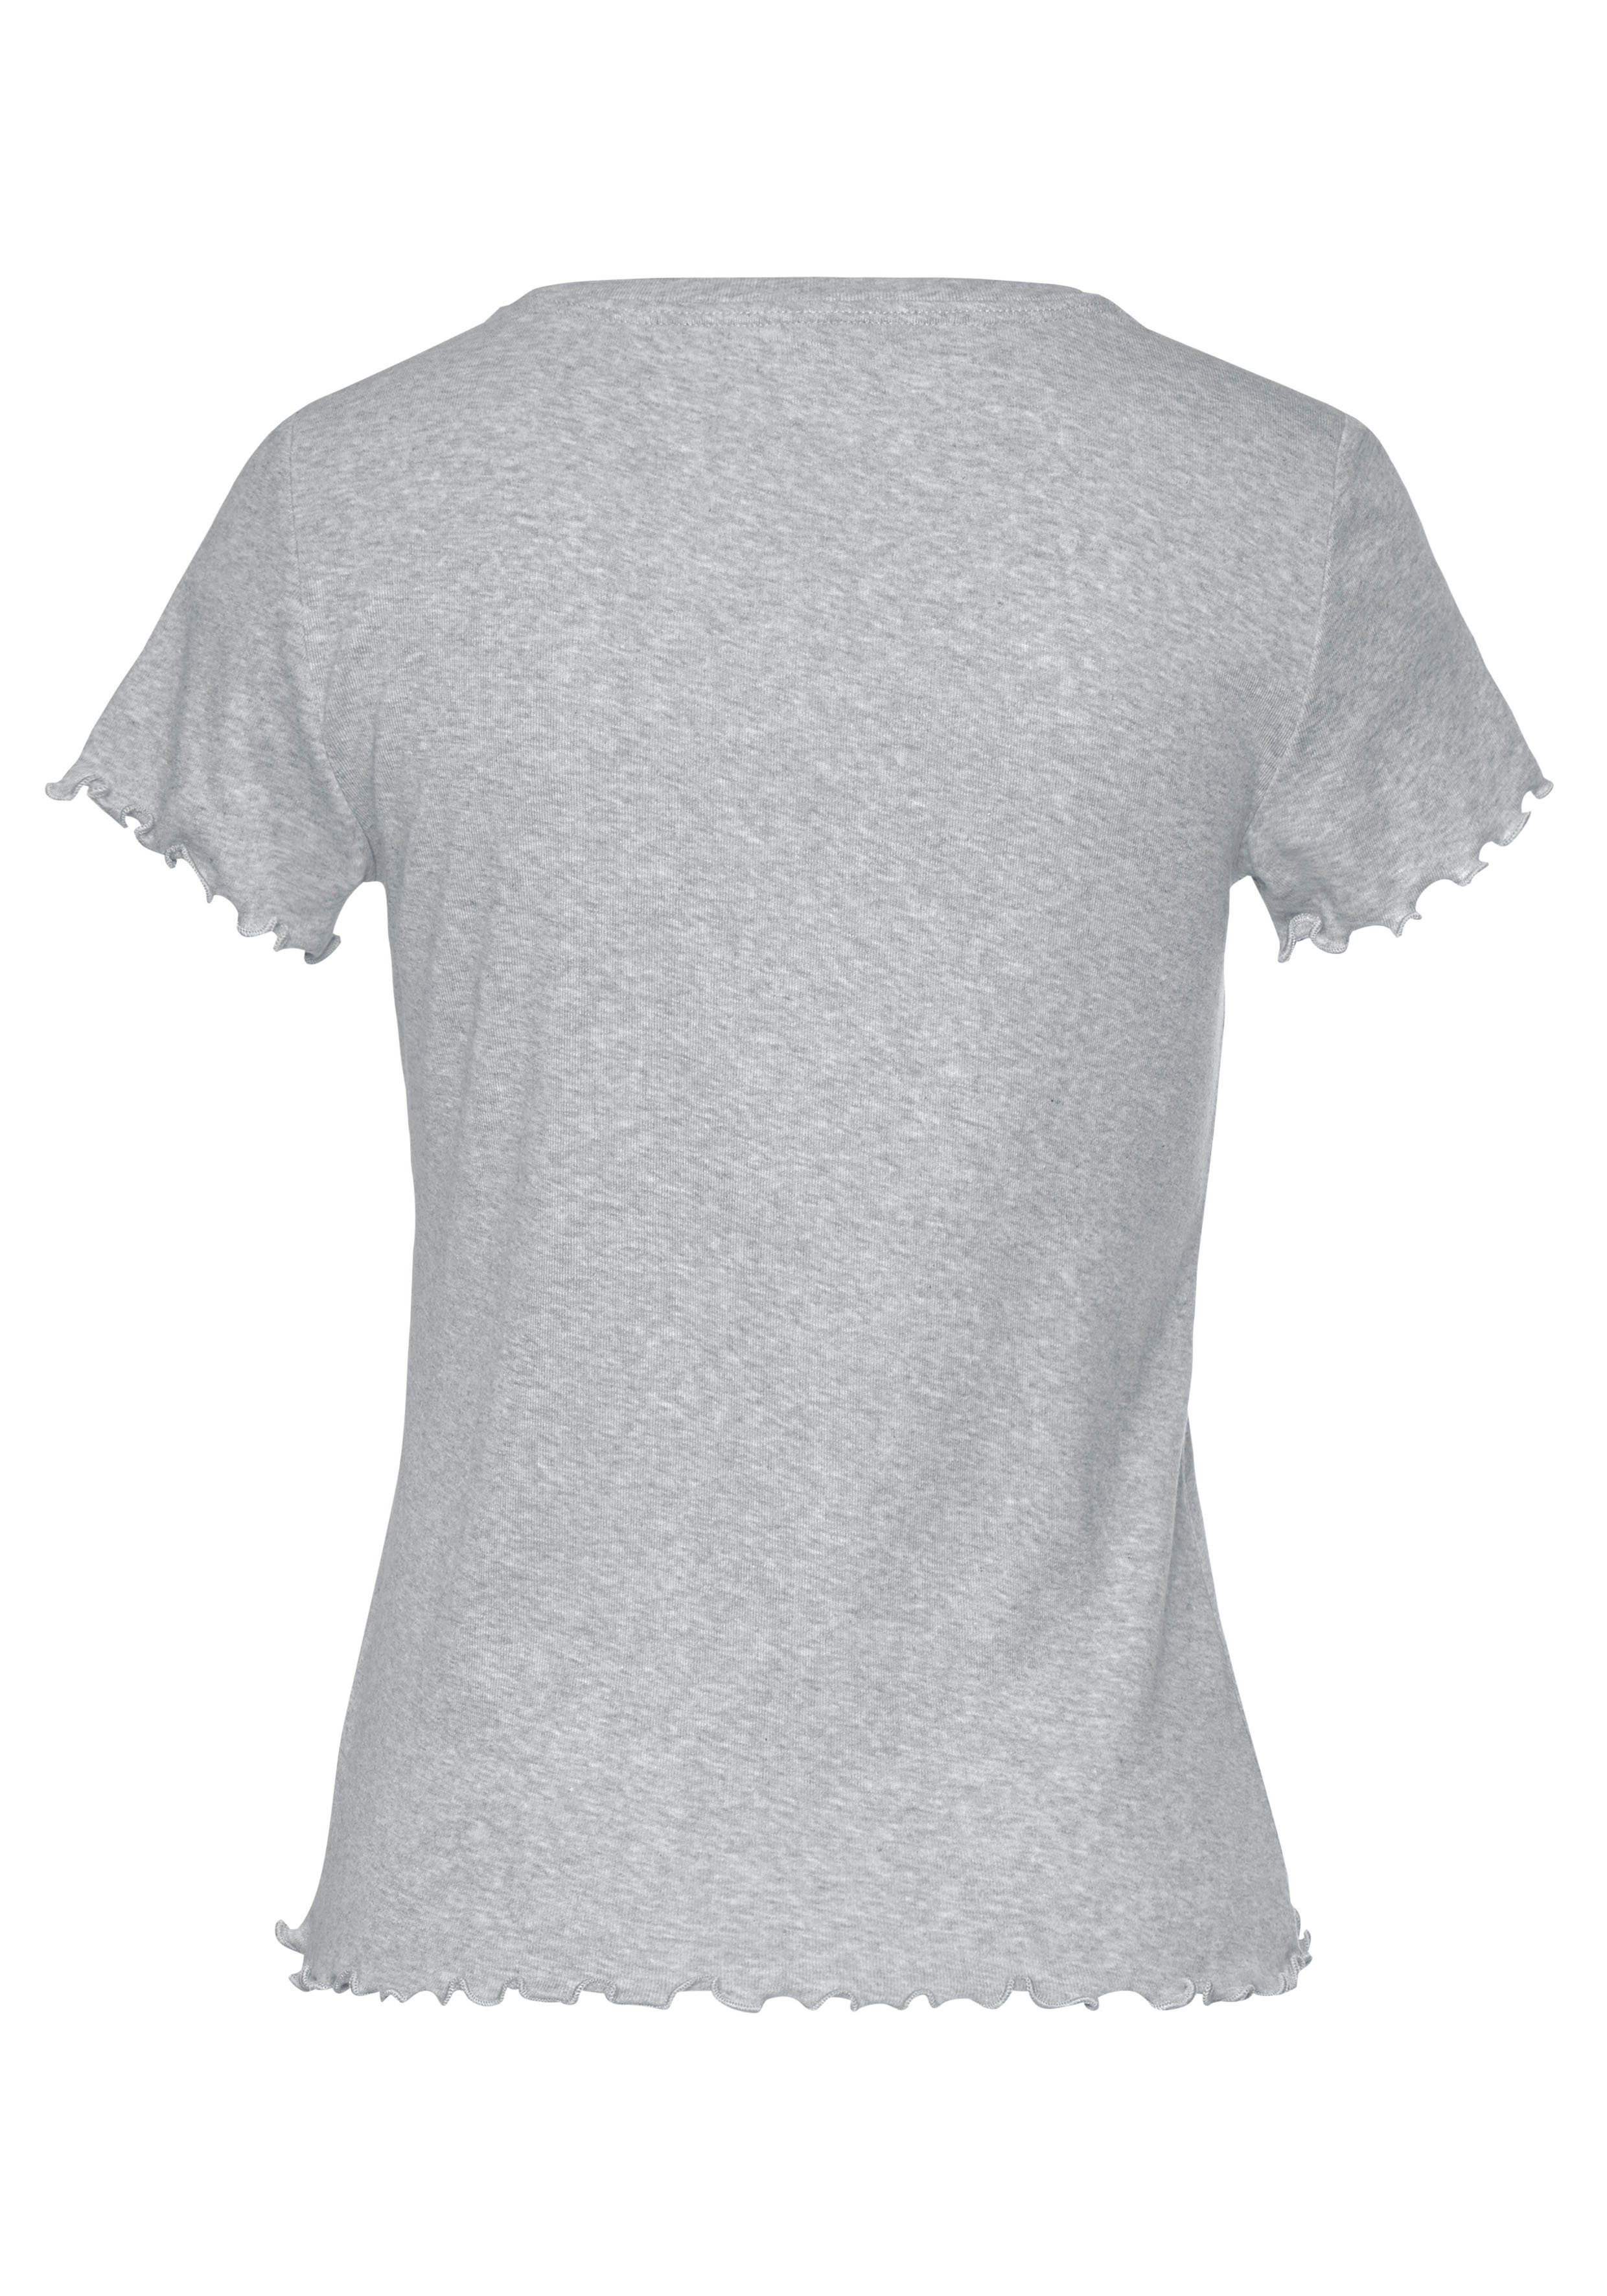 s.Oliver T-Shirt grau mit Kräuselsaum